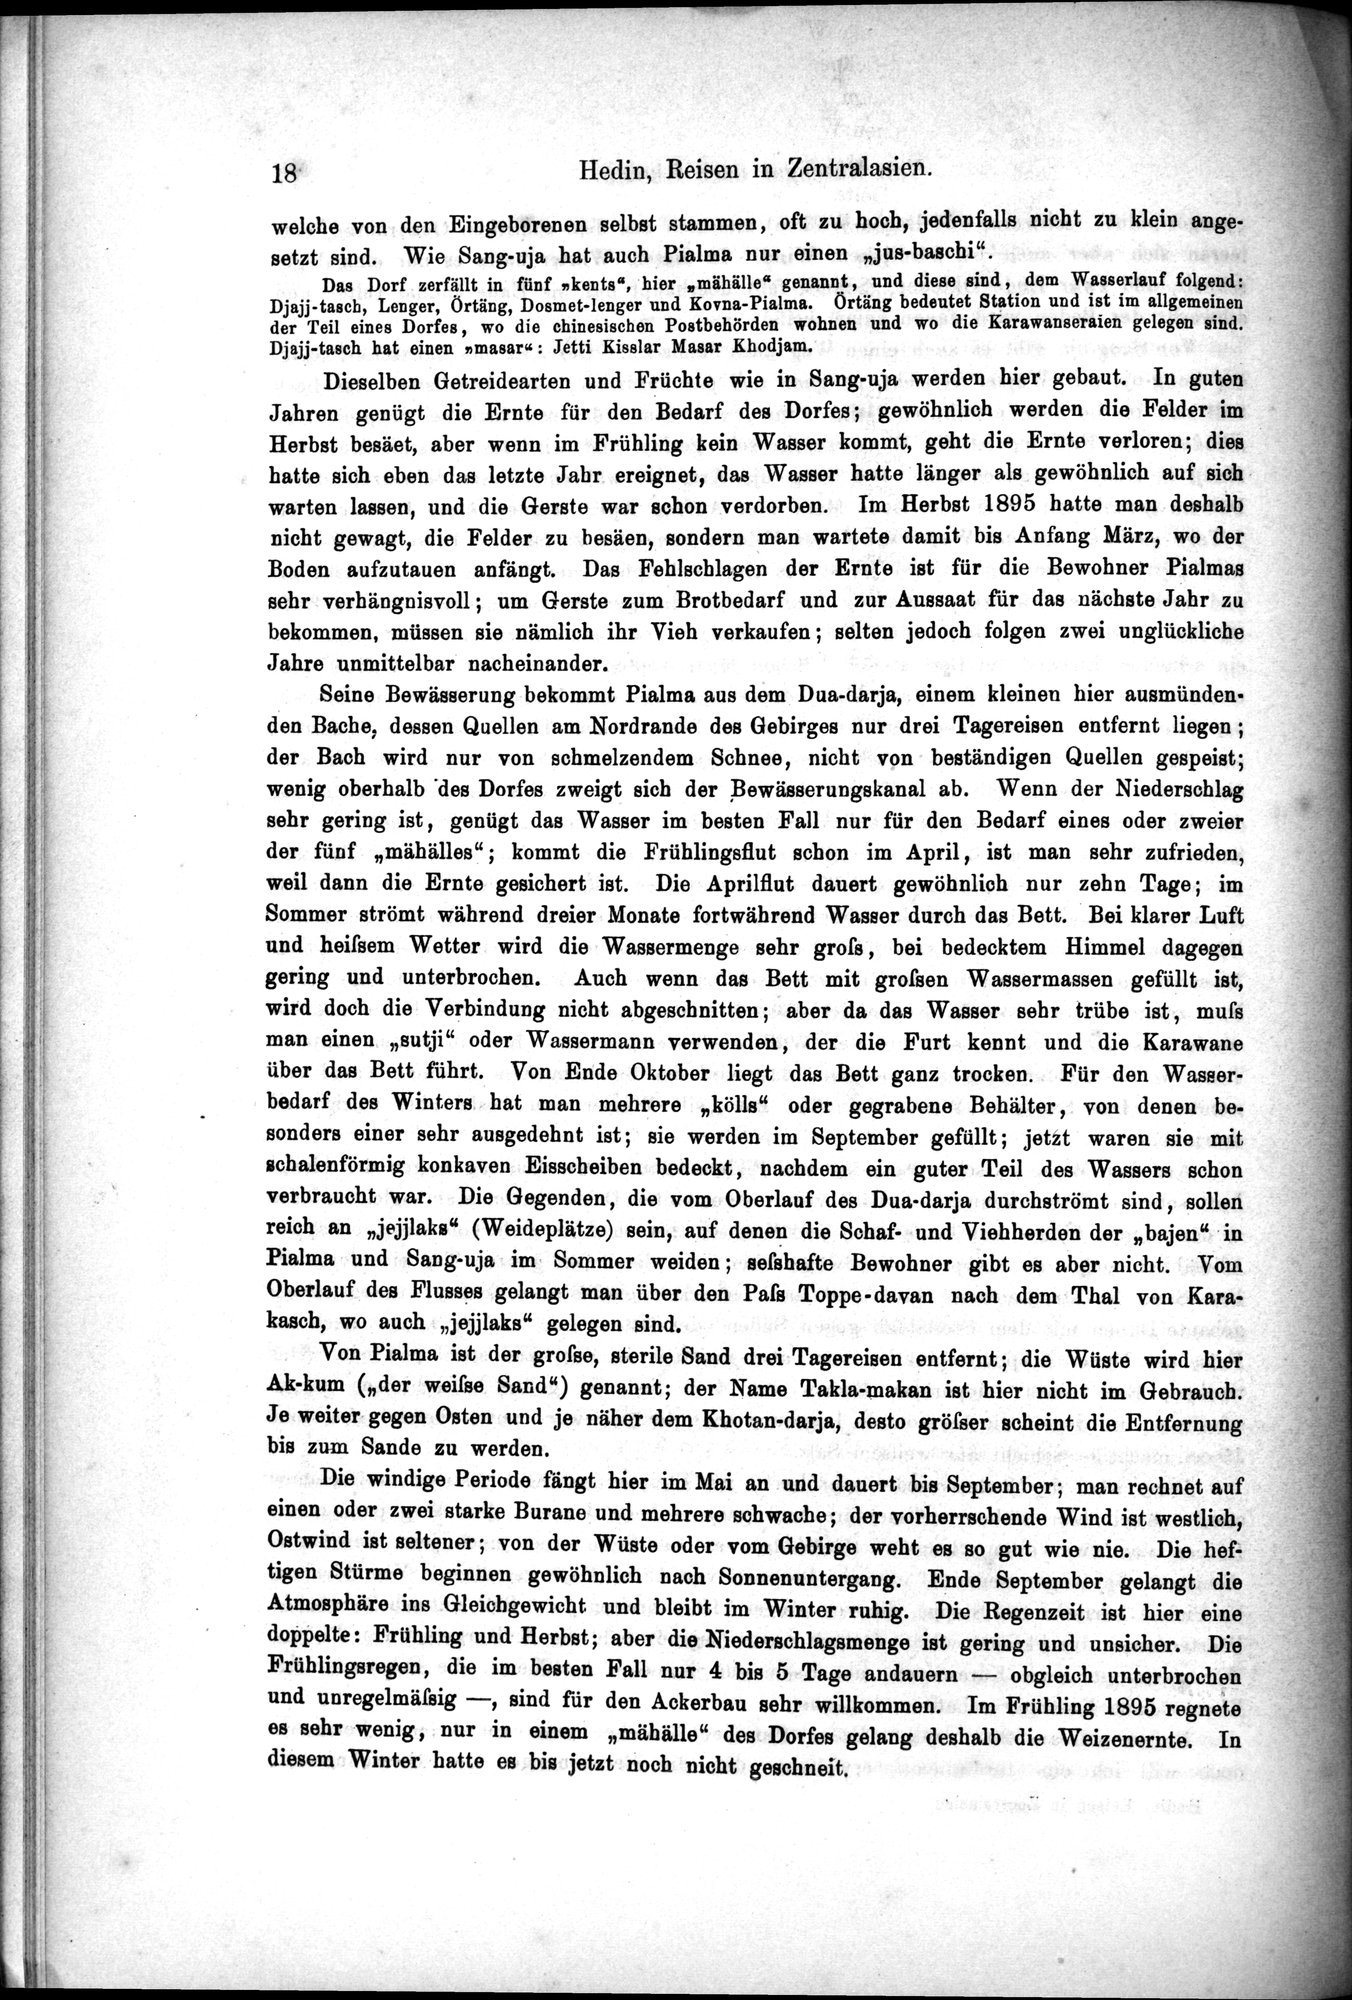 Die Geographische-Wissenschaftlichen Ergebnisse meiner Reisen in Zentralasien, 1894-1897 : vol.1 / Page 30 (Grayscale High Resolution Image)